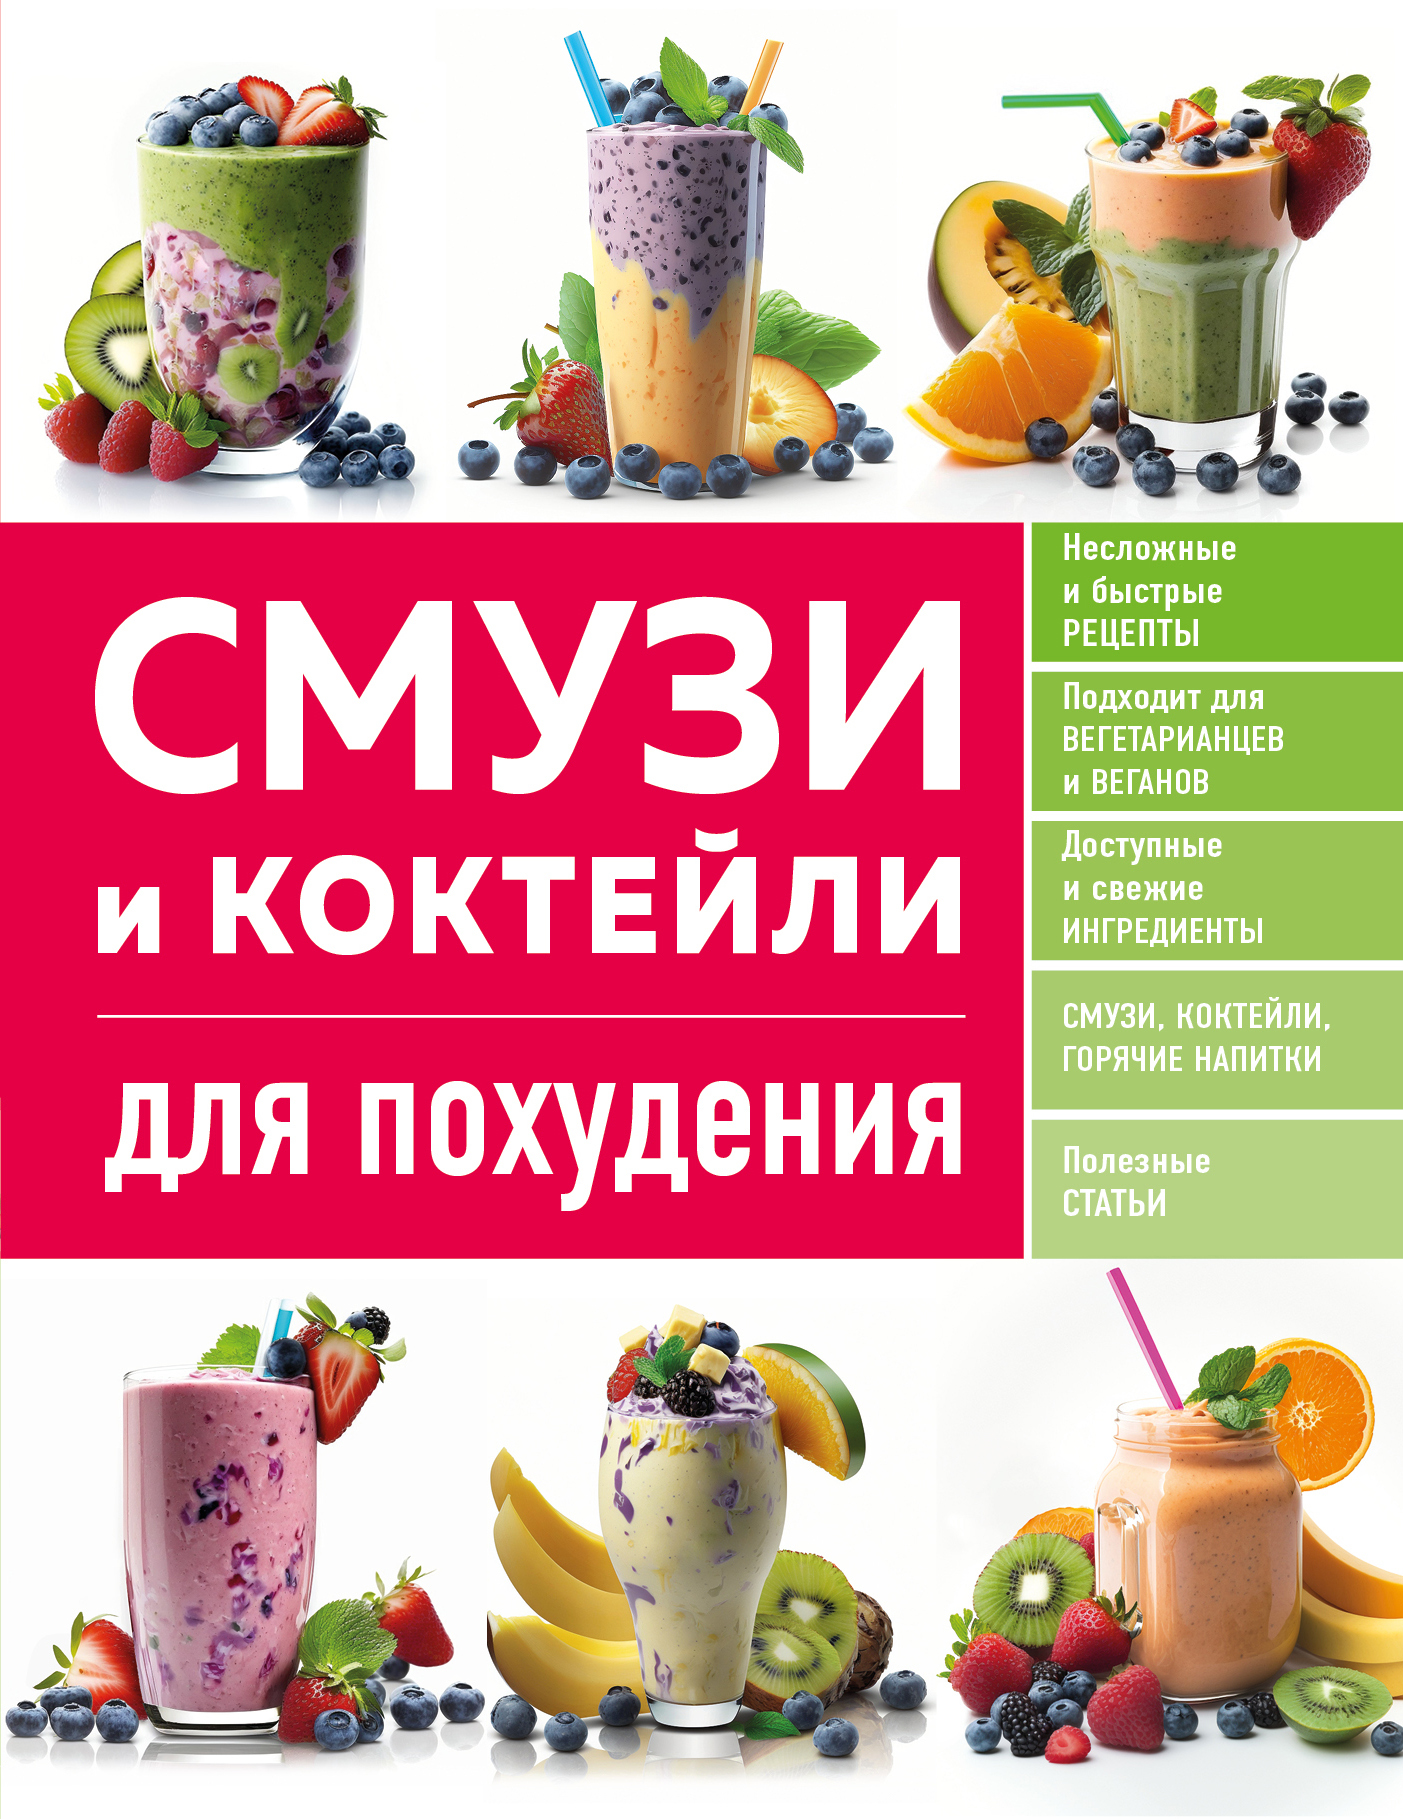 Коктейли для похудения - рецепты с фото на l2luna.ru (88 рецептов коктейля для похудения)